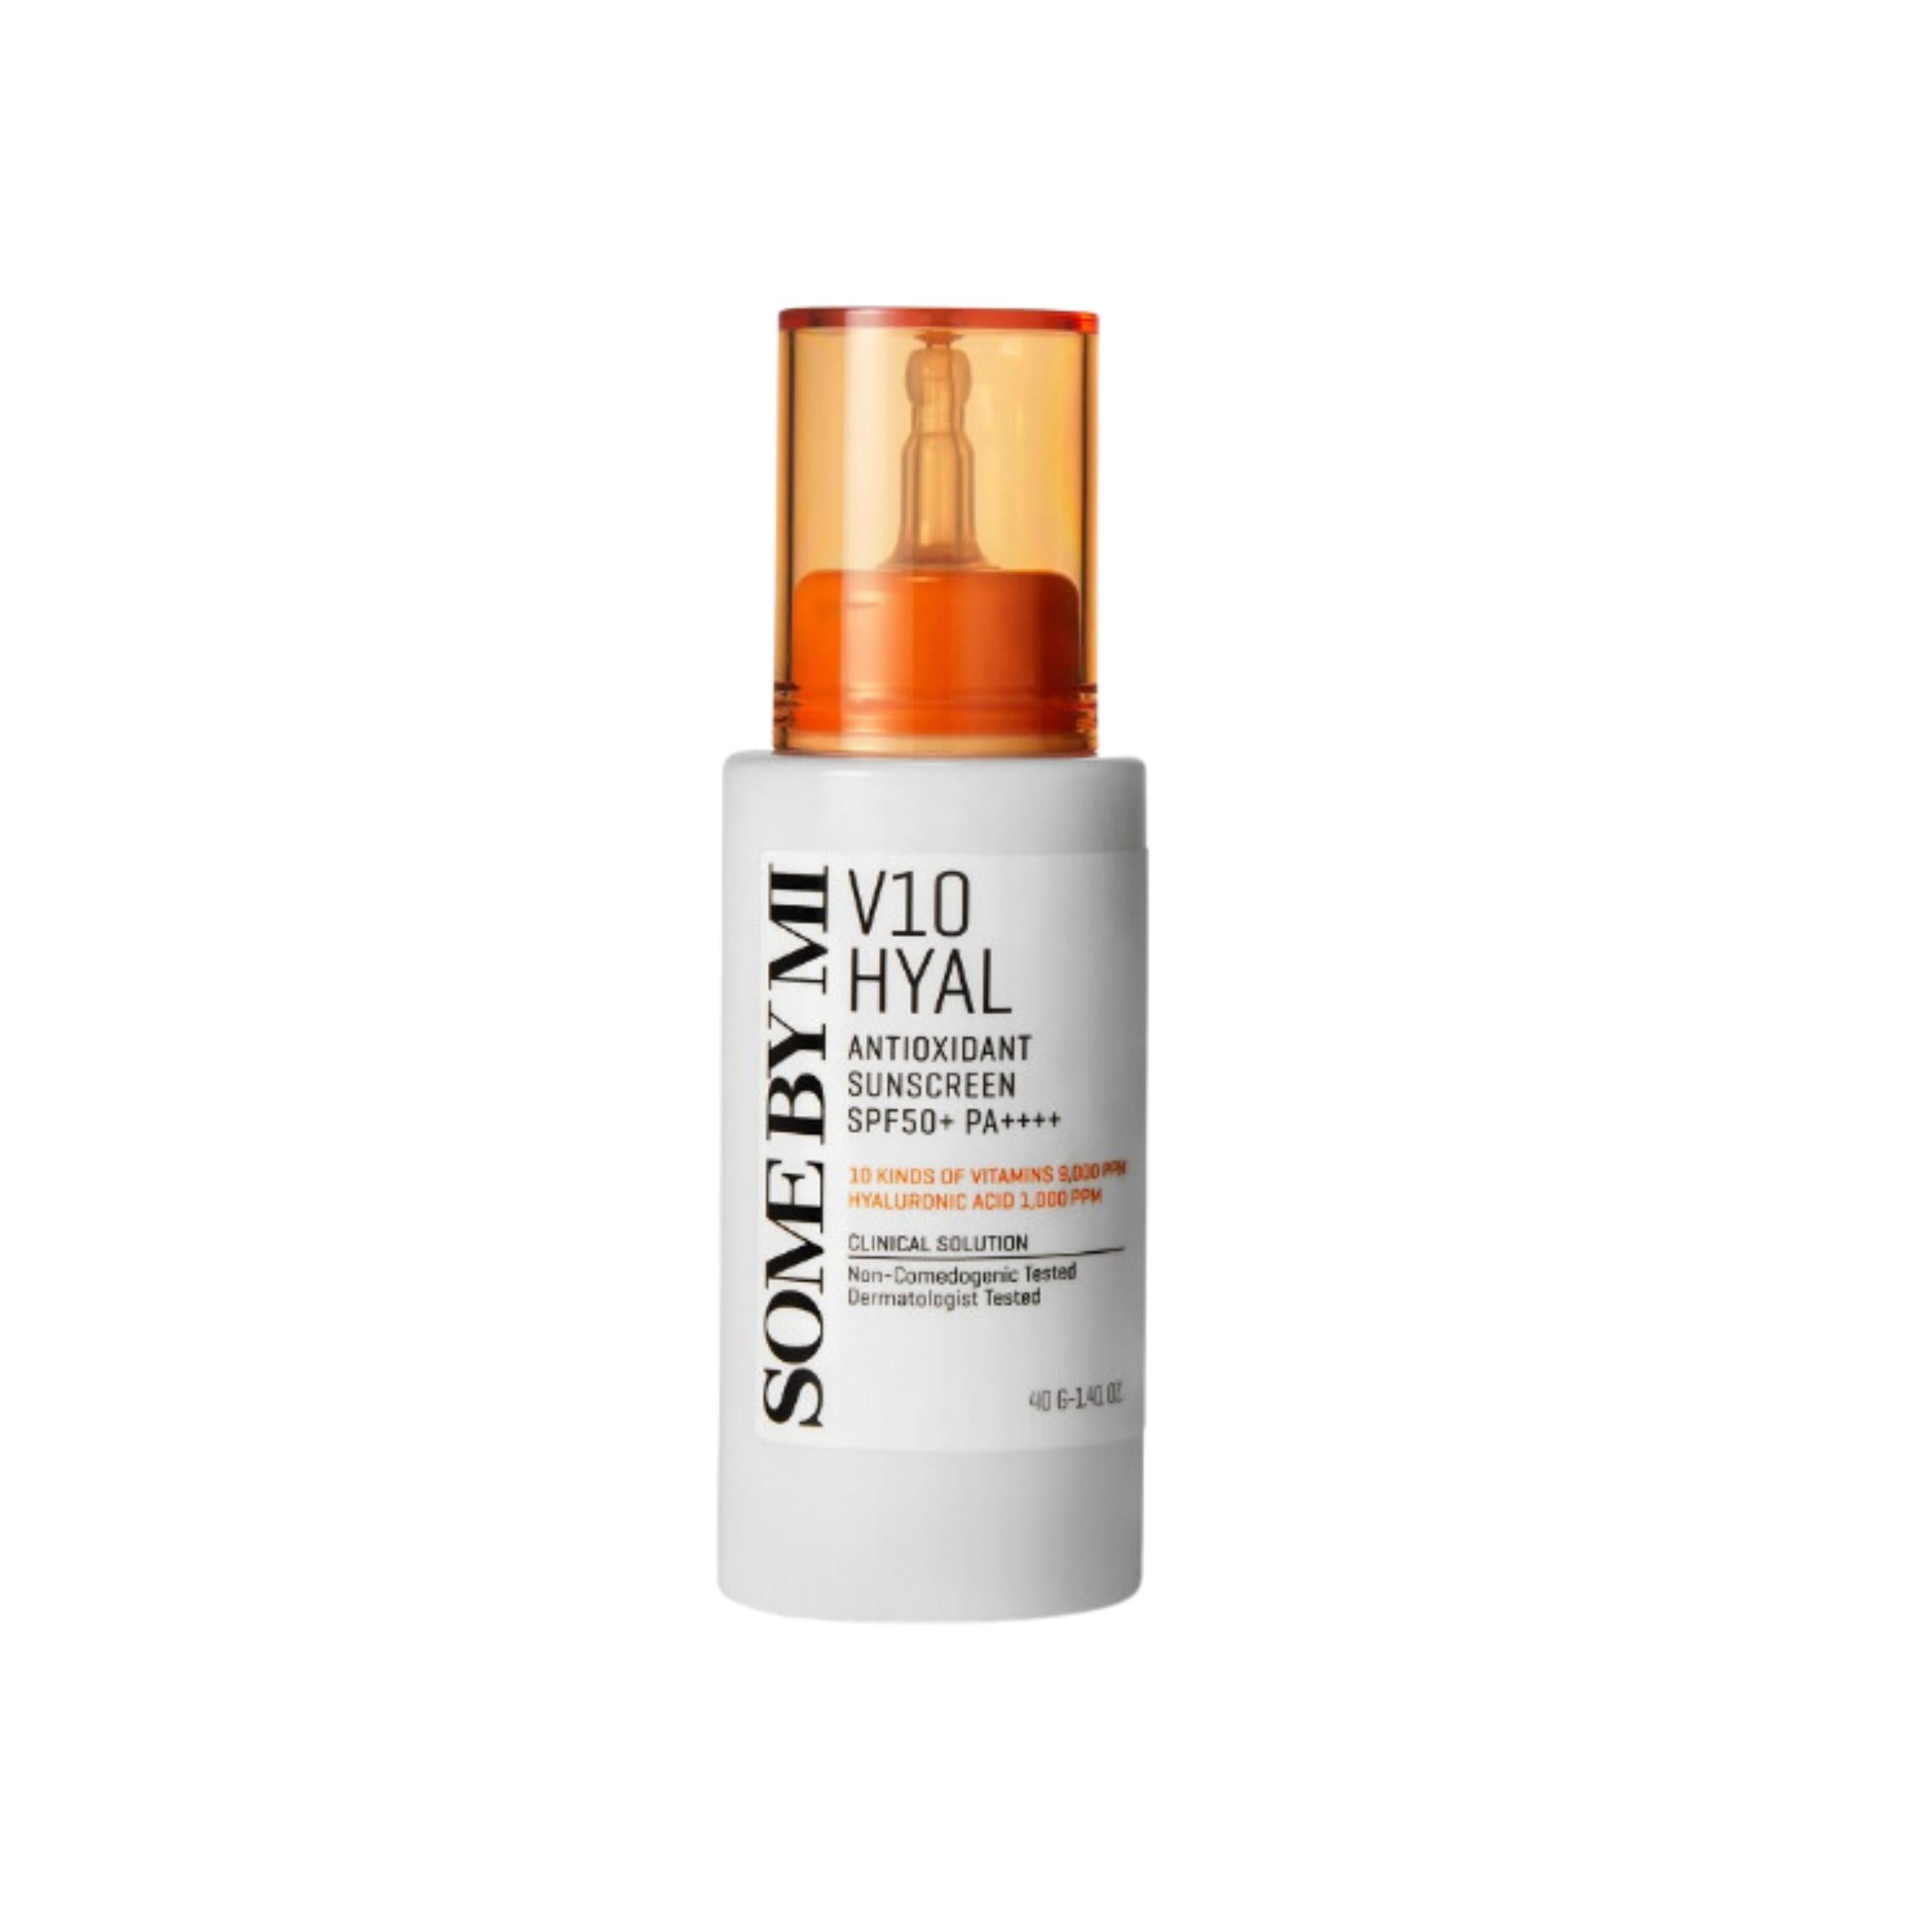 Слънцезащитен крем SOME BY MI V10 HYAL Antioxidant Sunscreen SPF50+, 40мл